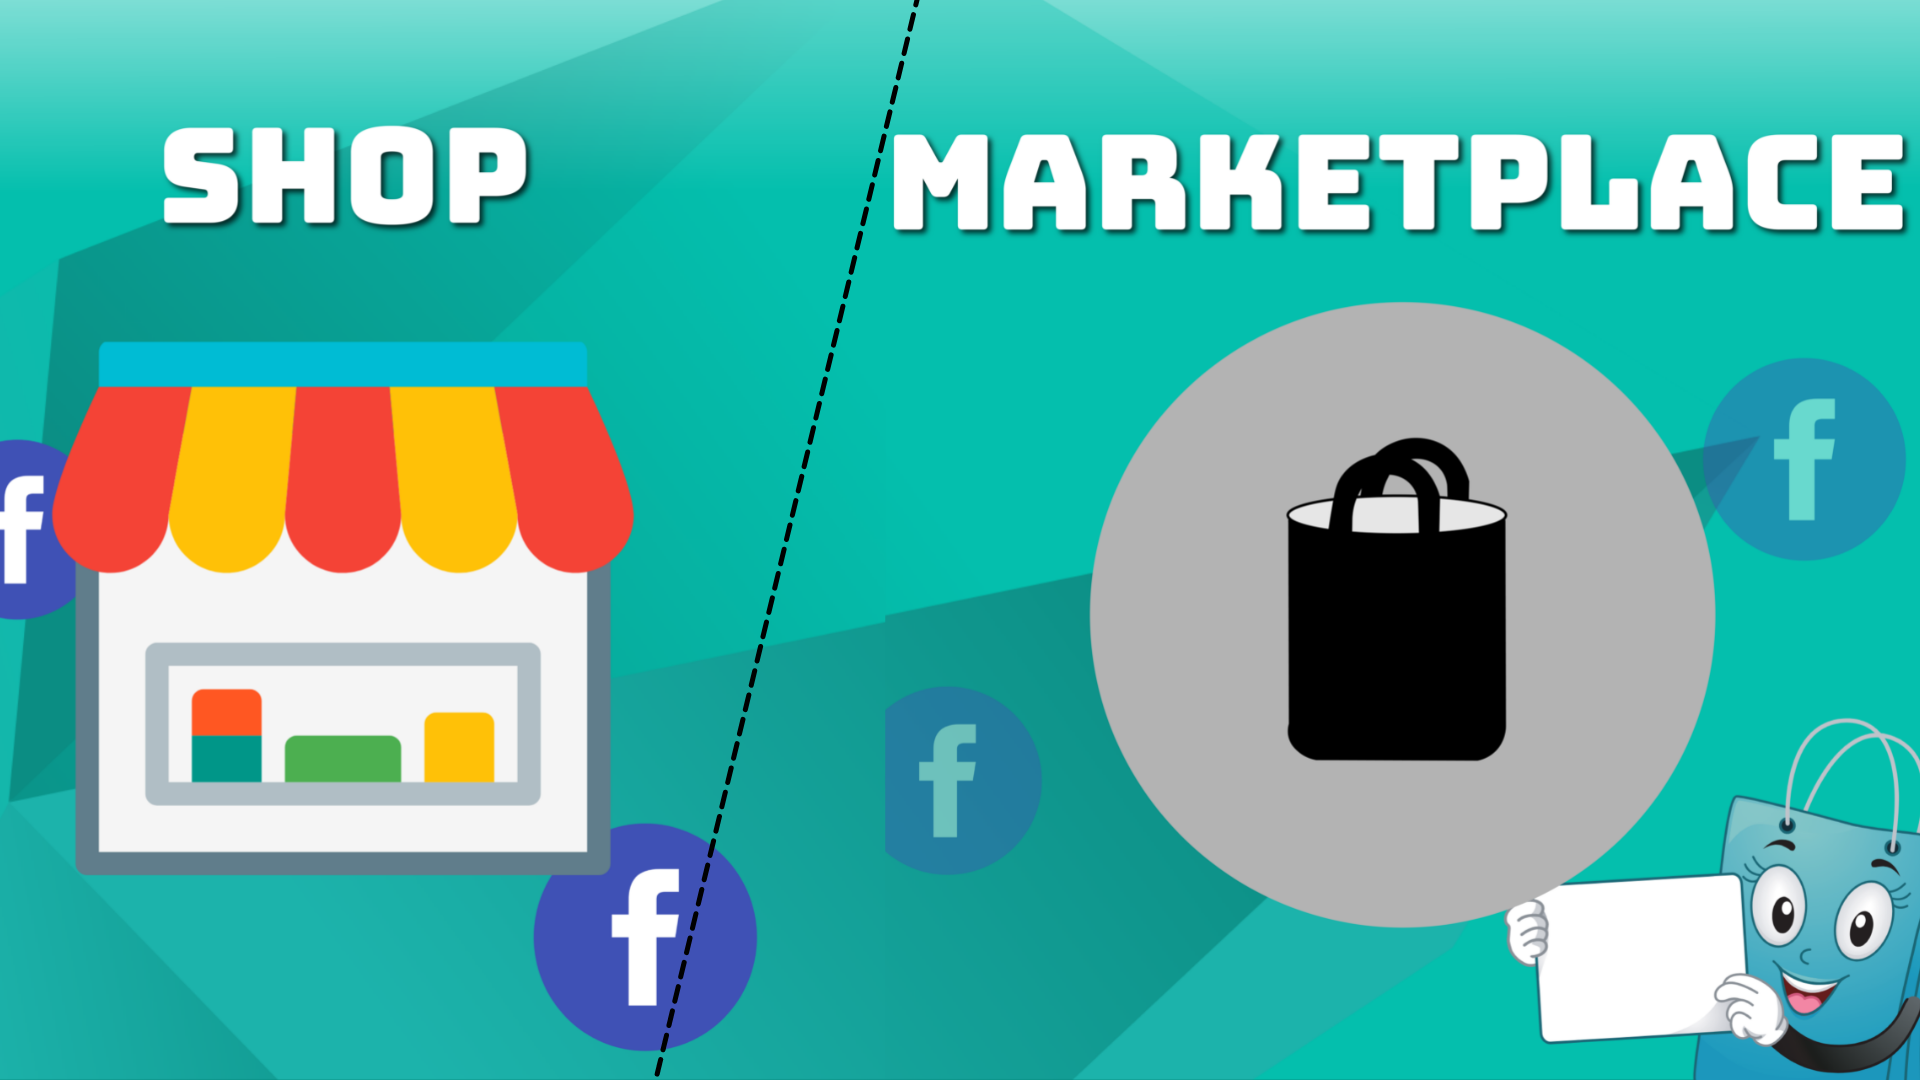 Marketplace vs Shops